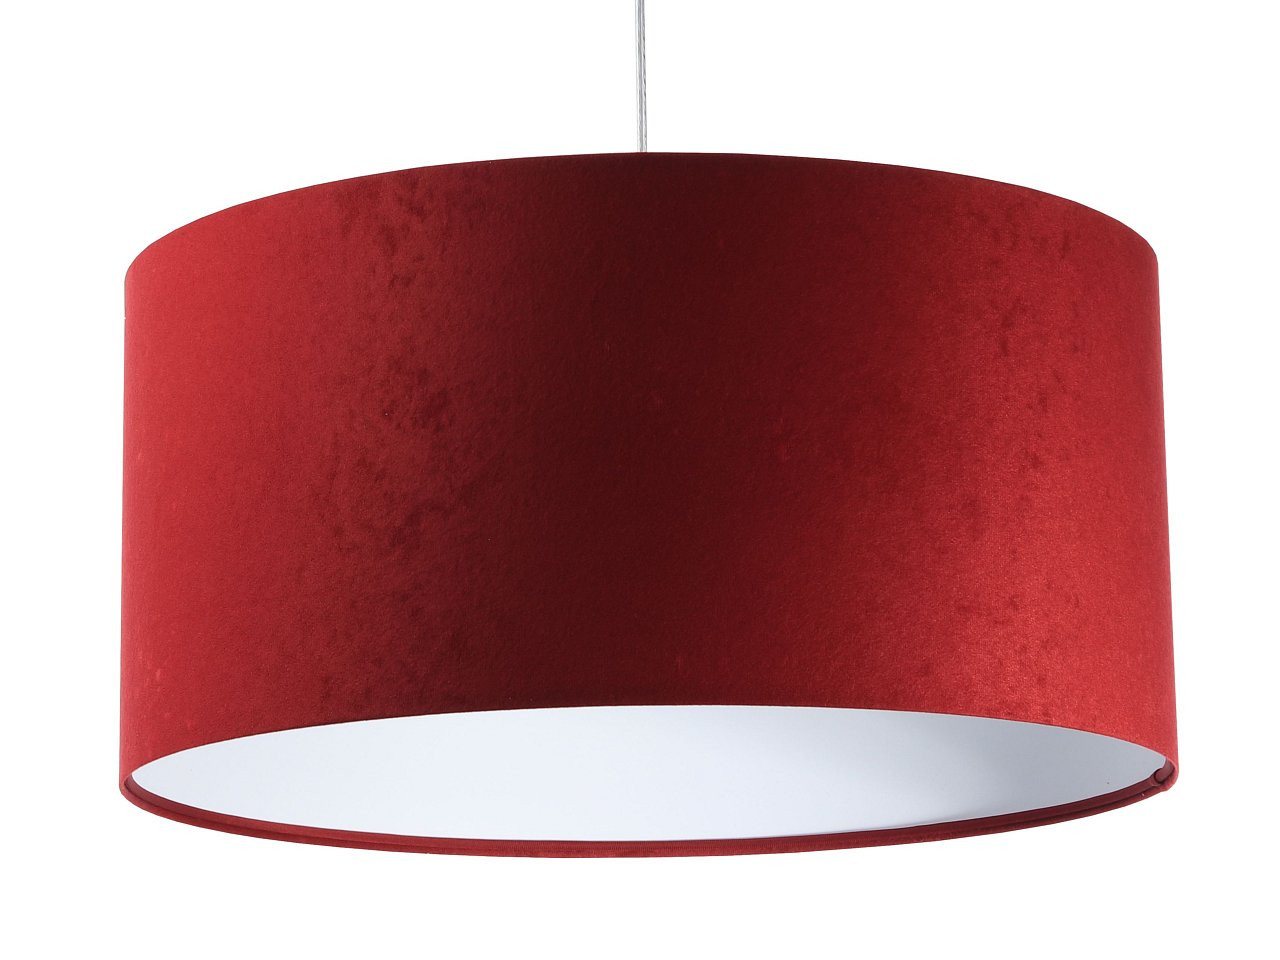 ONZENO Pendelleuchte Classic Graceful Trendy 1 40x20x20 cm, einzigartiges Design und hochwertige Lampe von ONZENO